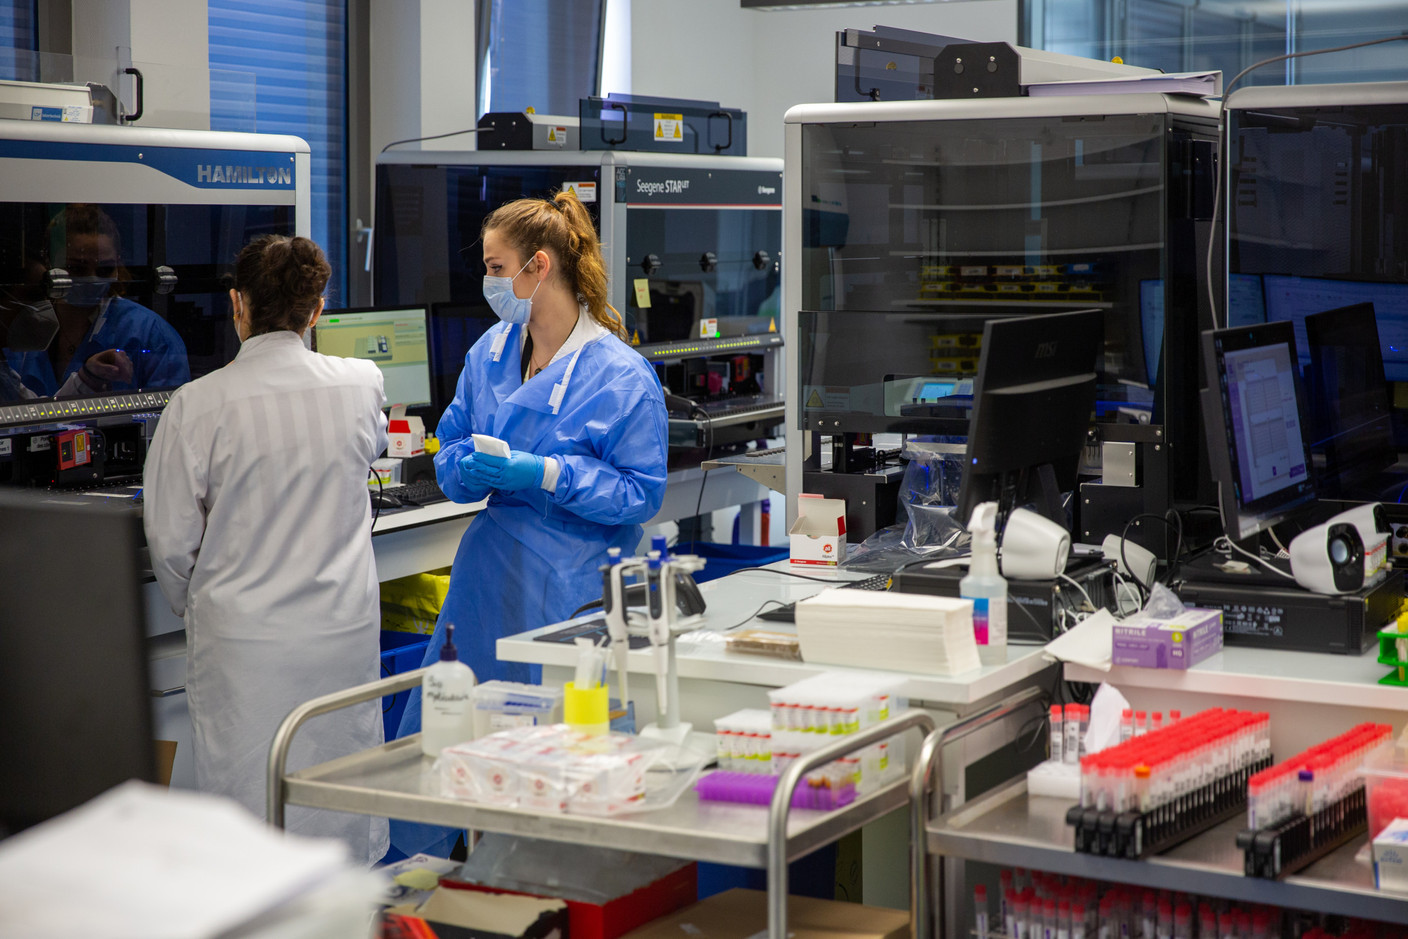 Des coursiers récupèrent régulièrement les prélèvements des tests PCR dans les 50 centres environ et les apportent au laboratoire, à Leudelange. (Photo: Romain Gamba/Maison Moderne)